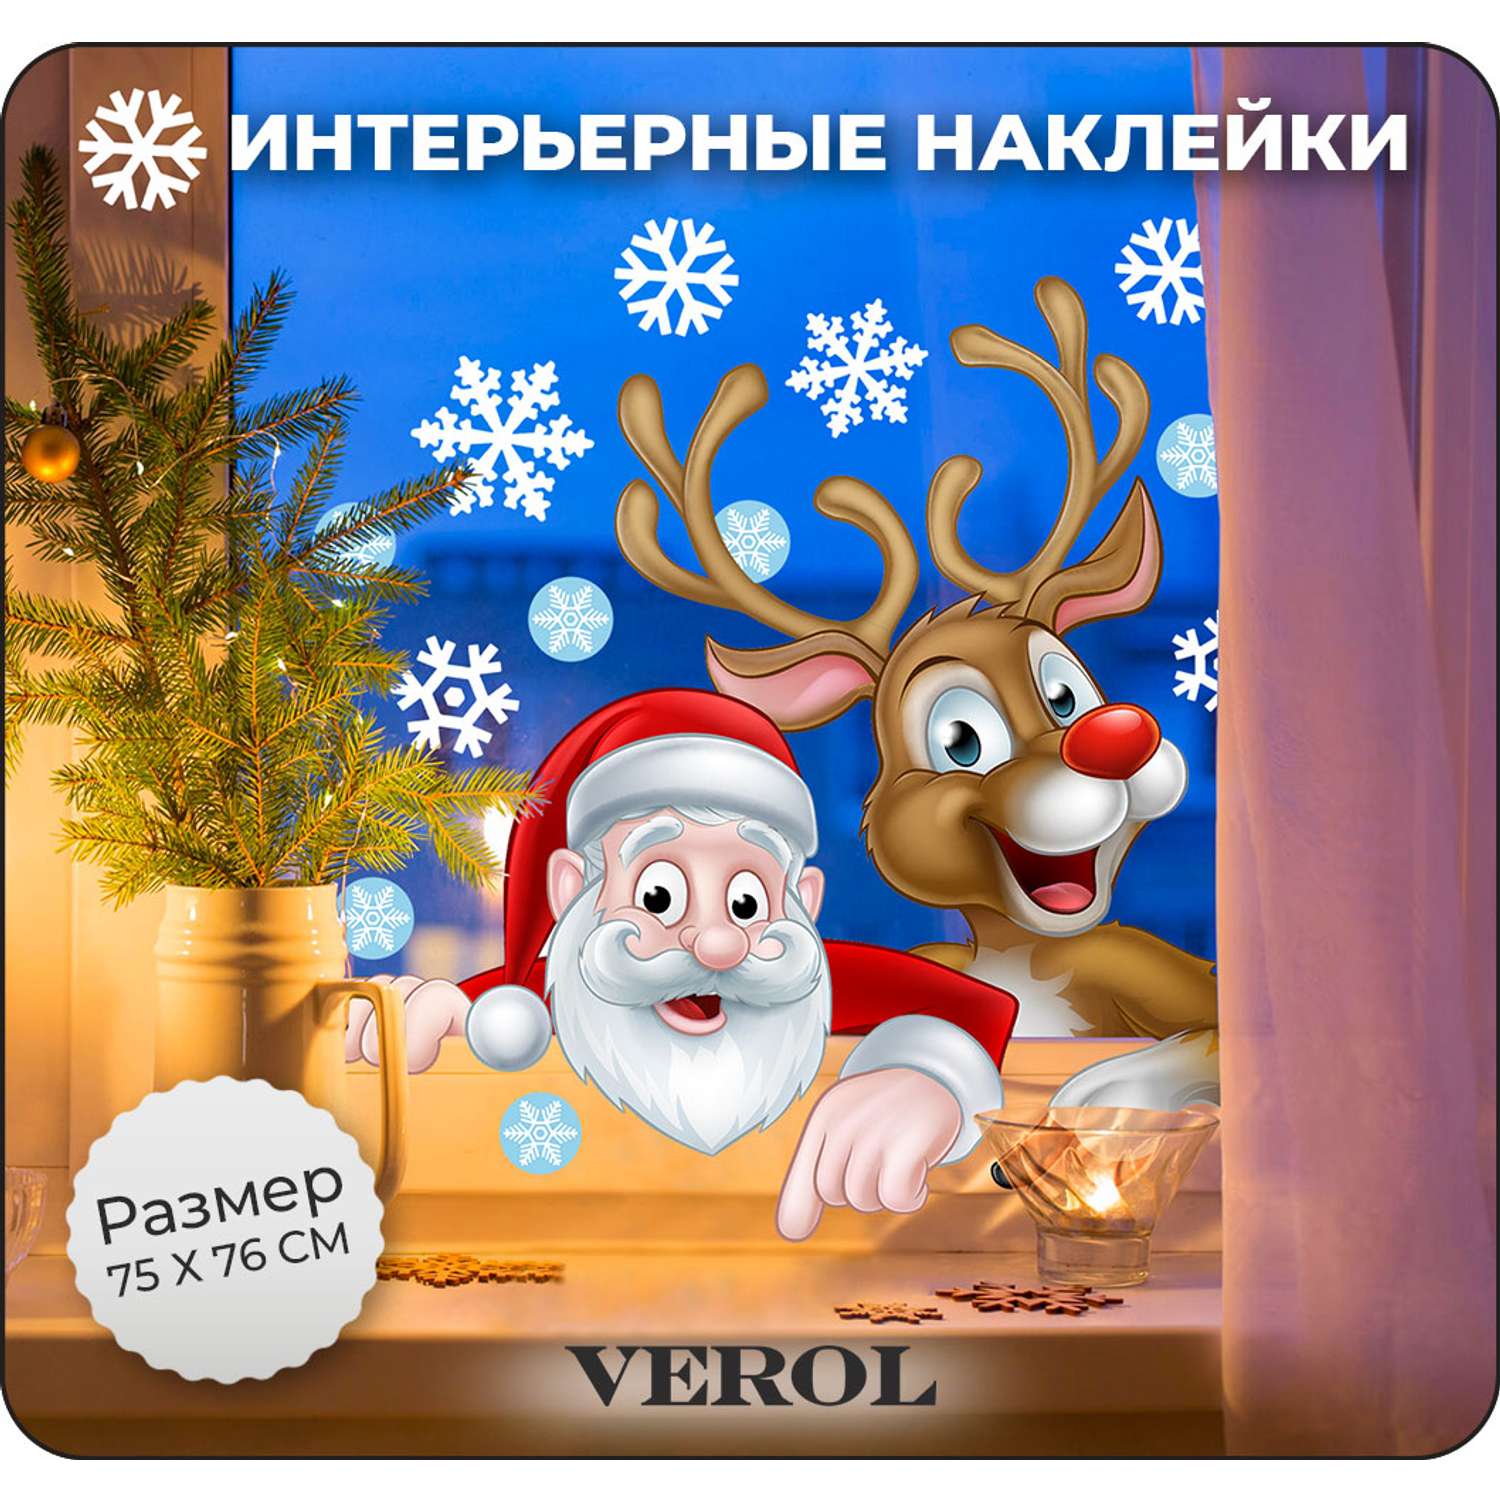 Наклейки интерьерные VEROL Дед Мороз и олень - фото 1